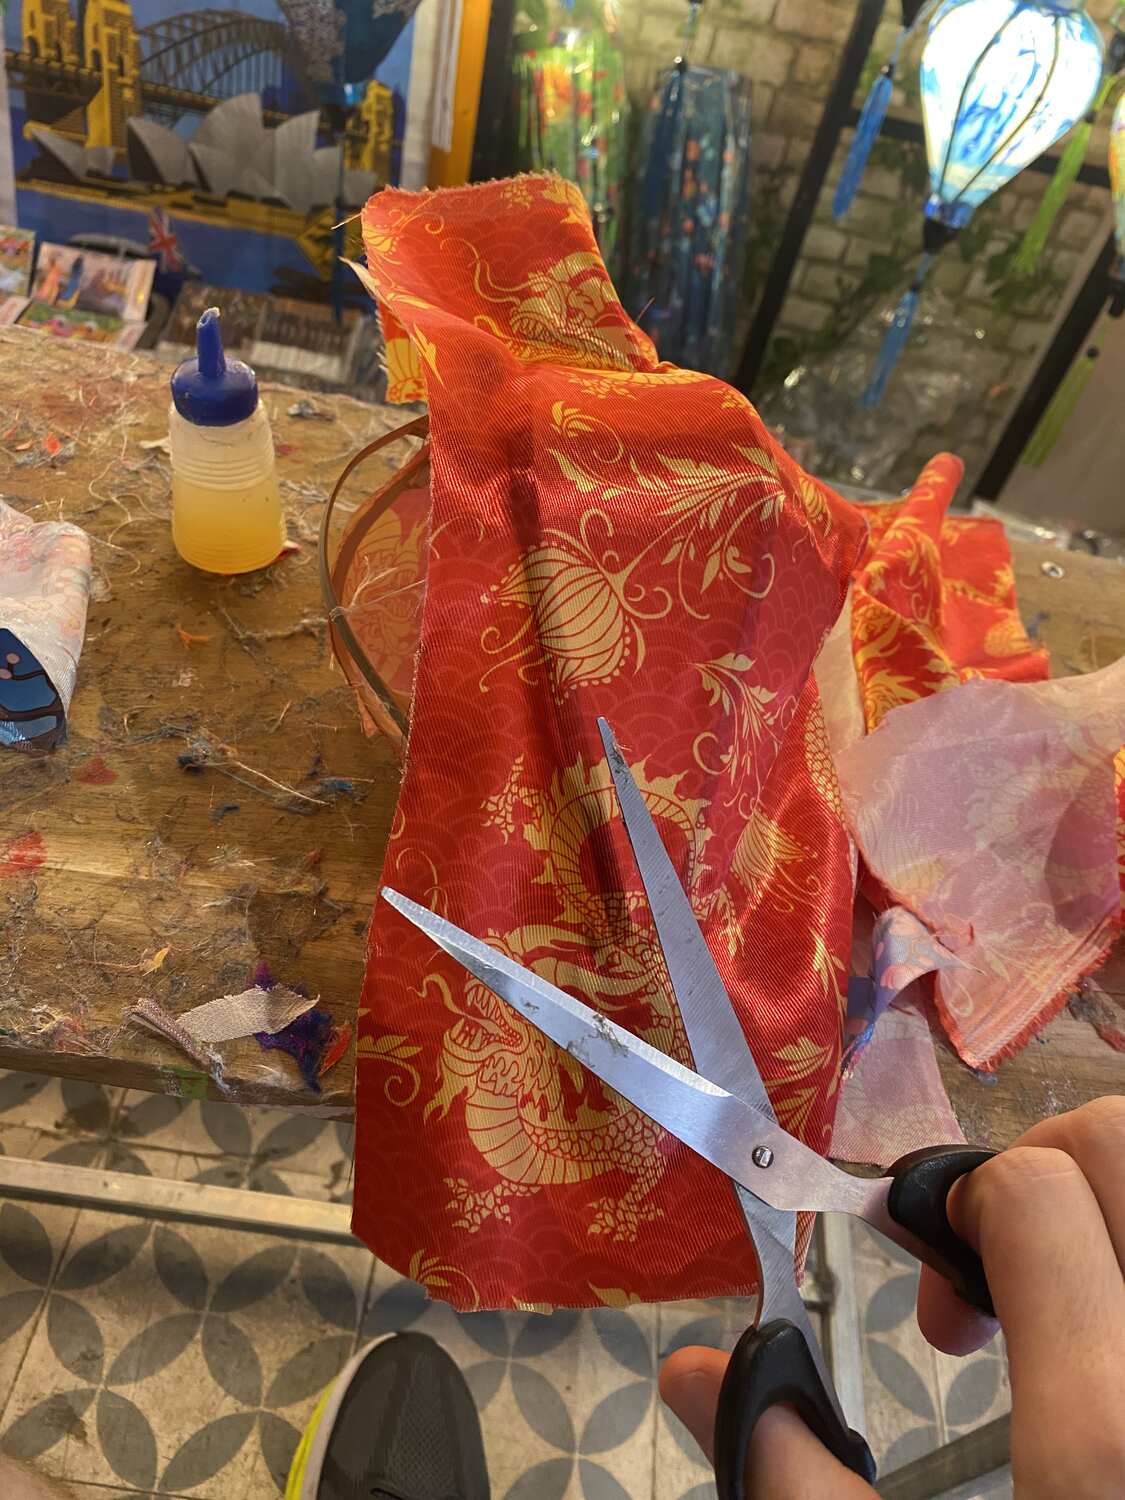 Cutting the silk at a lantern making class Hoi An